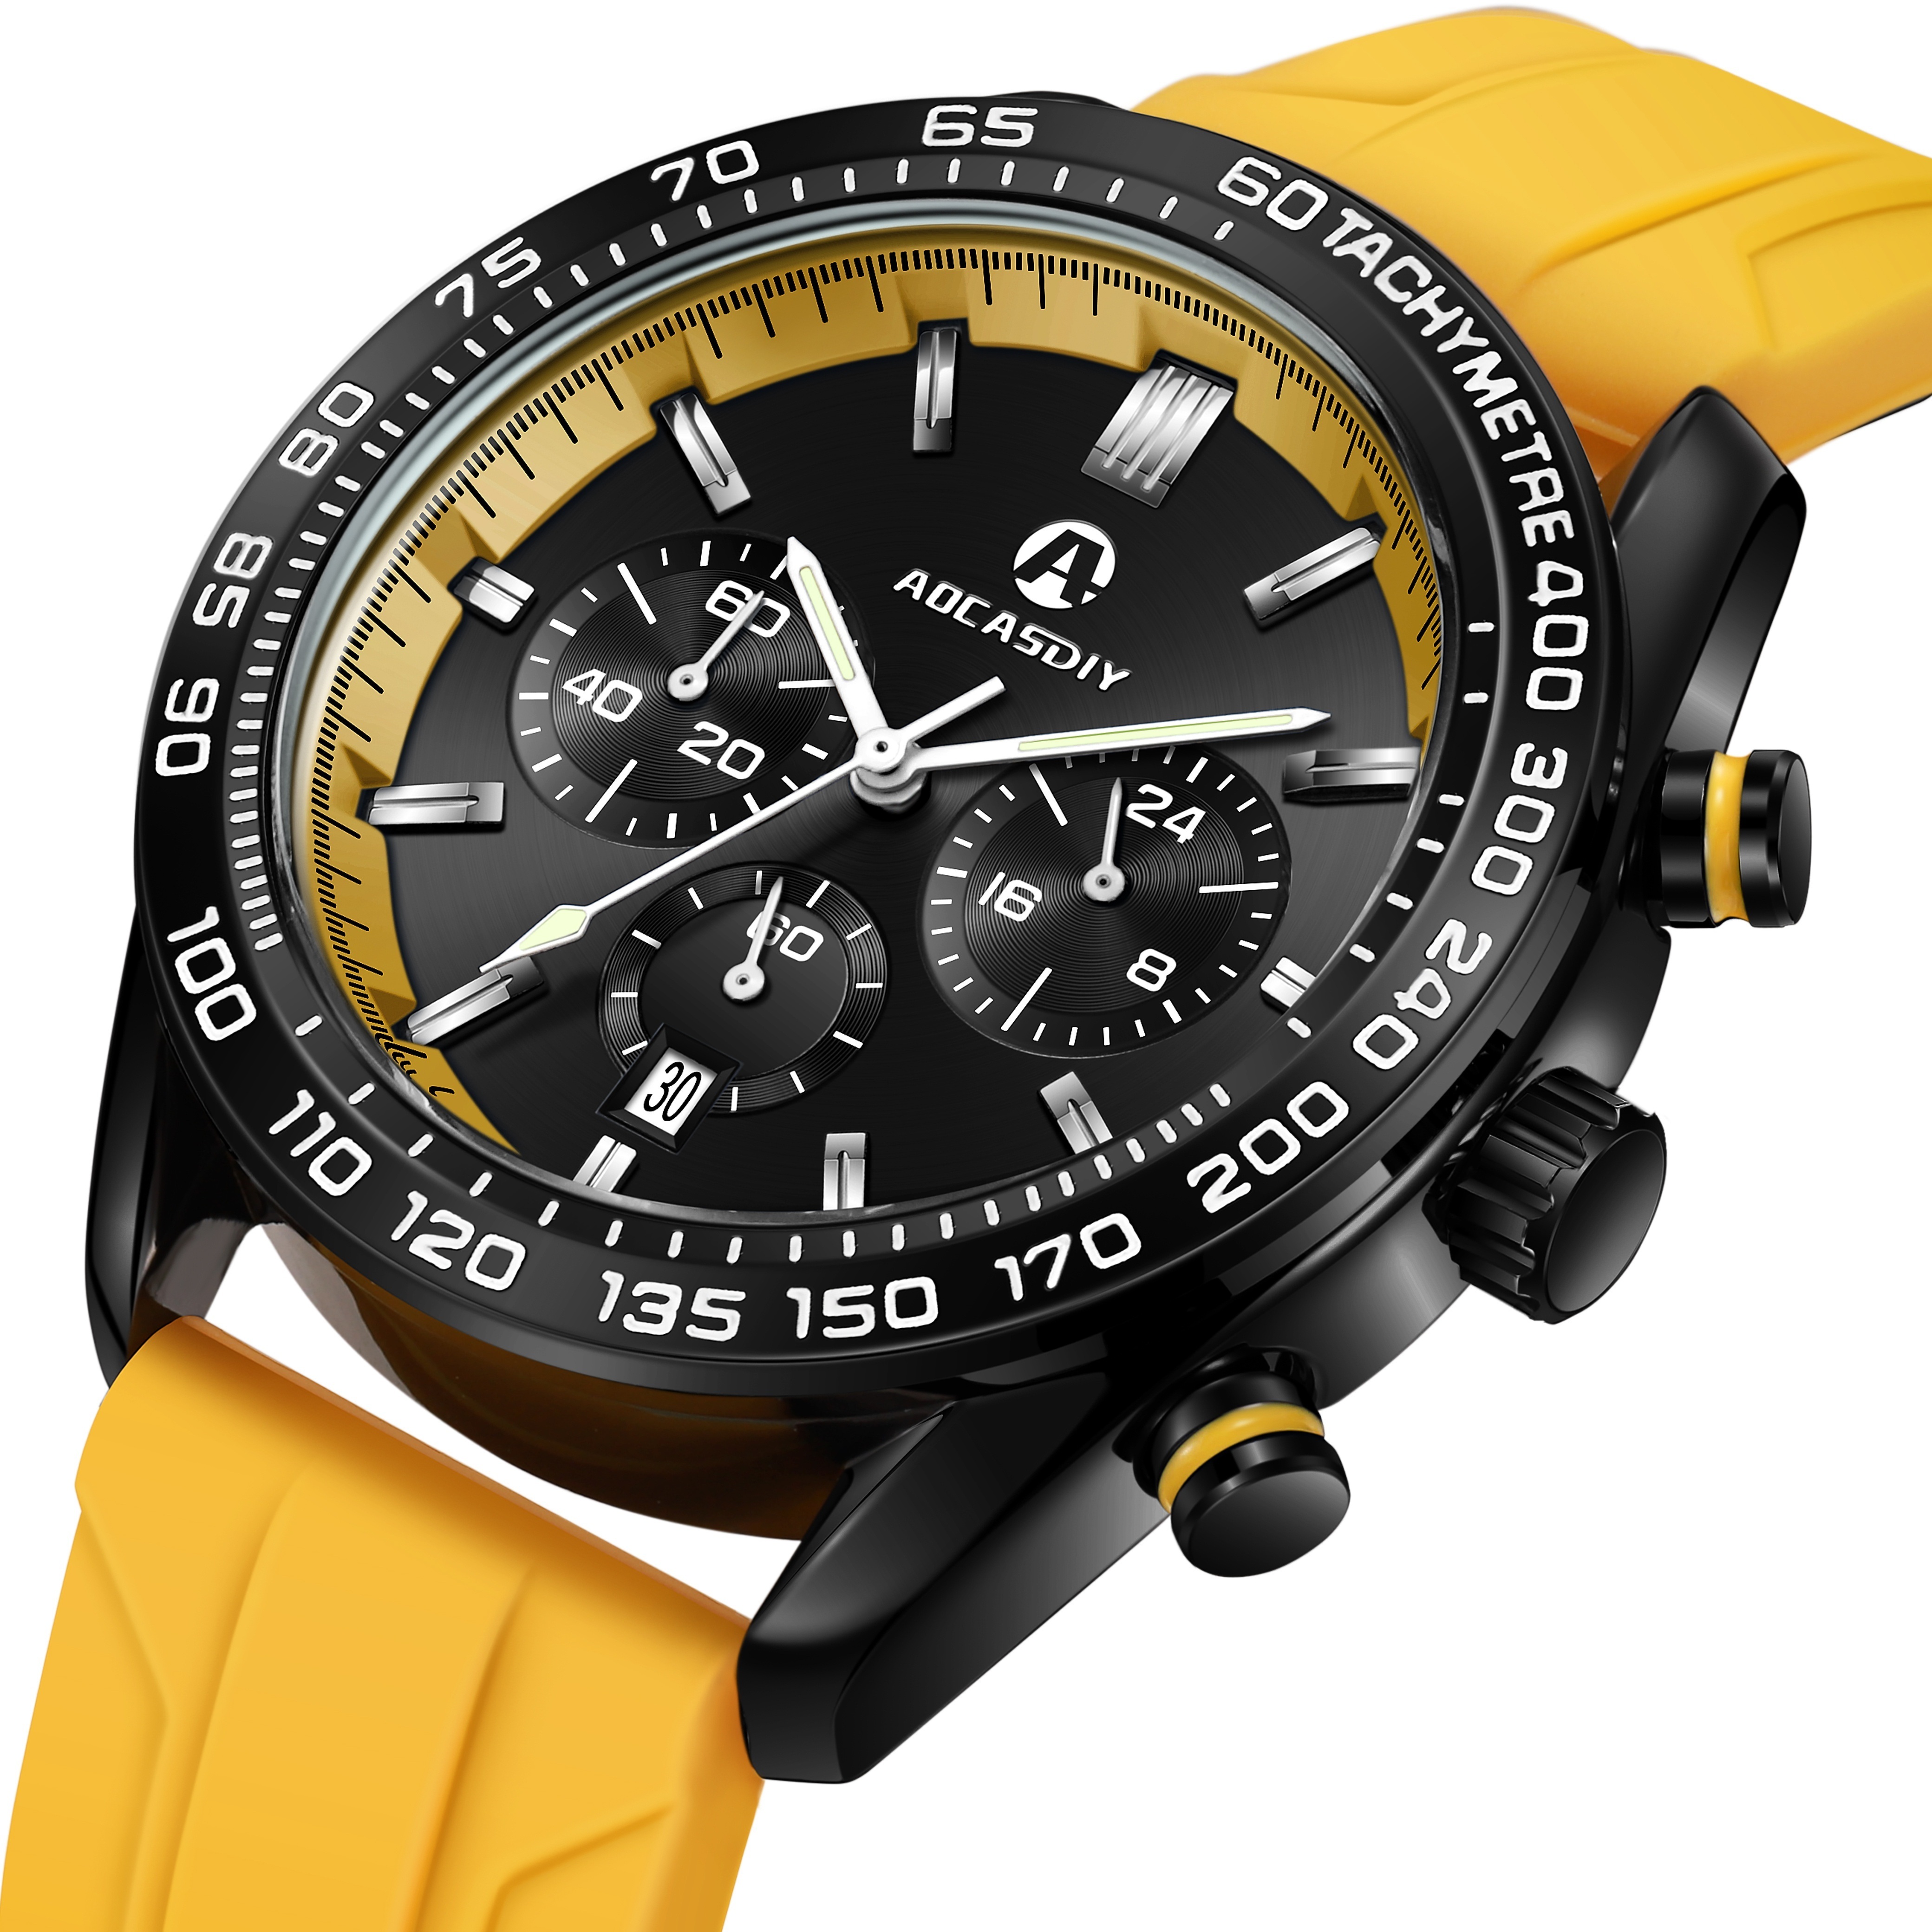 多機能メンズ腕時計、スポーツ腕時計、メンズクロノグラフ自動防水腕時計、シリコンストラップ付き